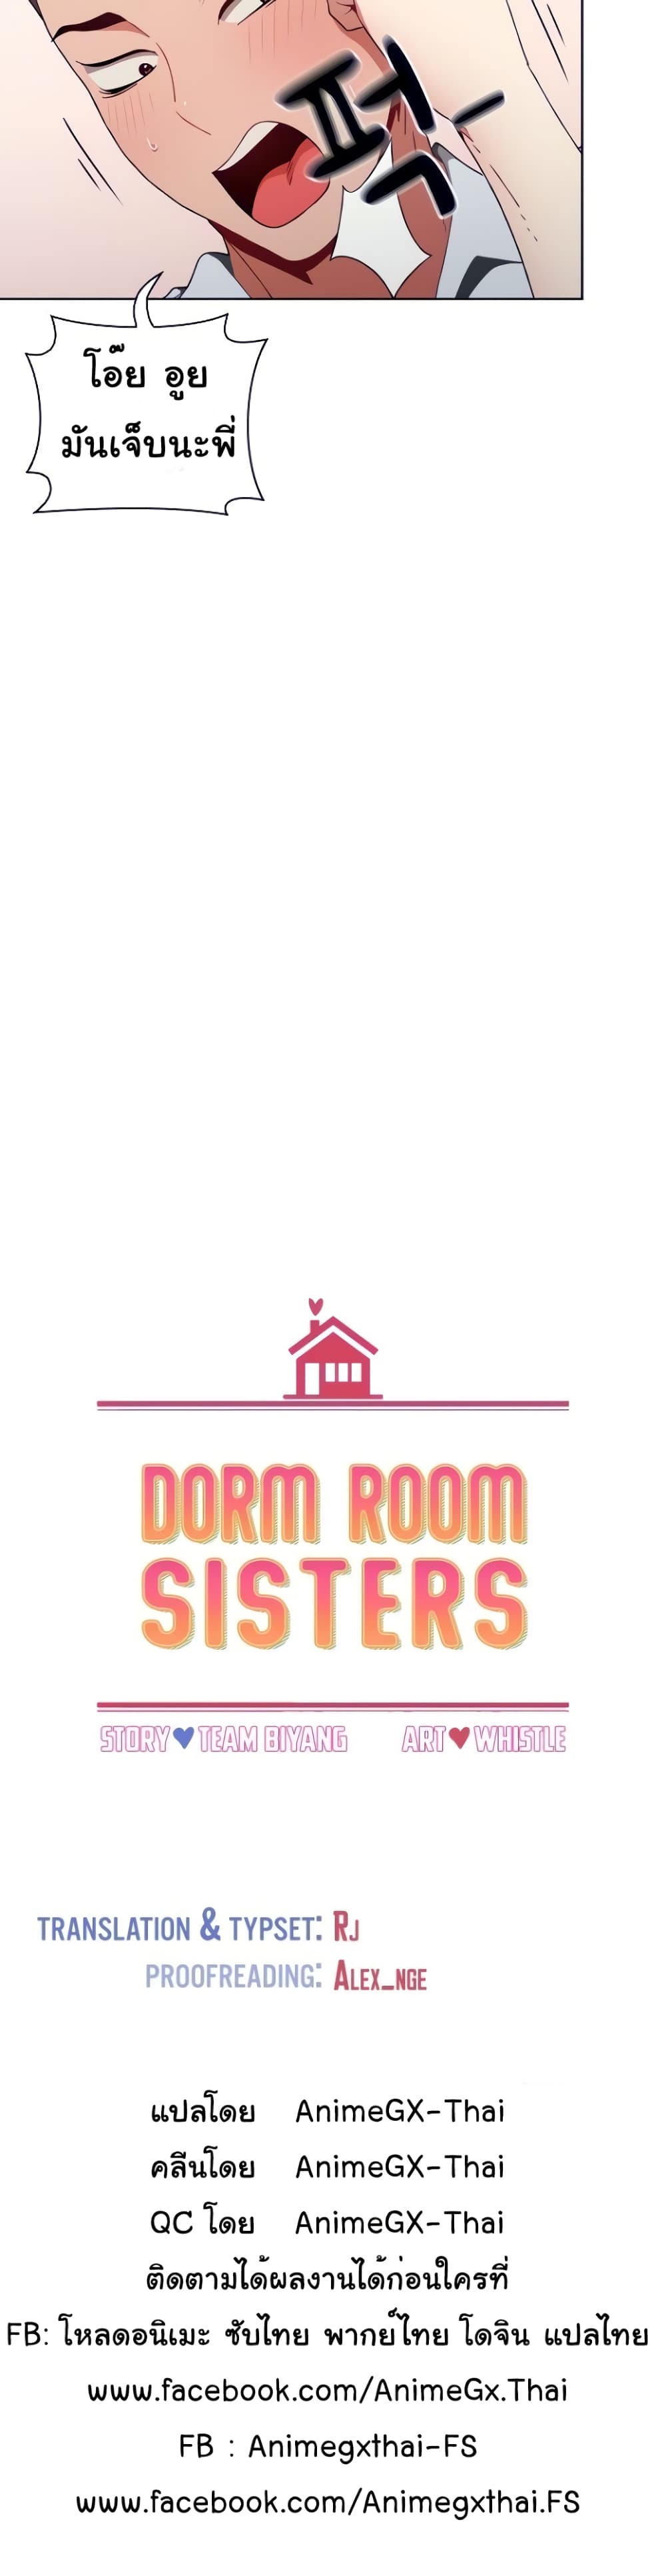 Dorm-Room-Sisters-5_12.jpg